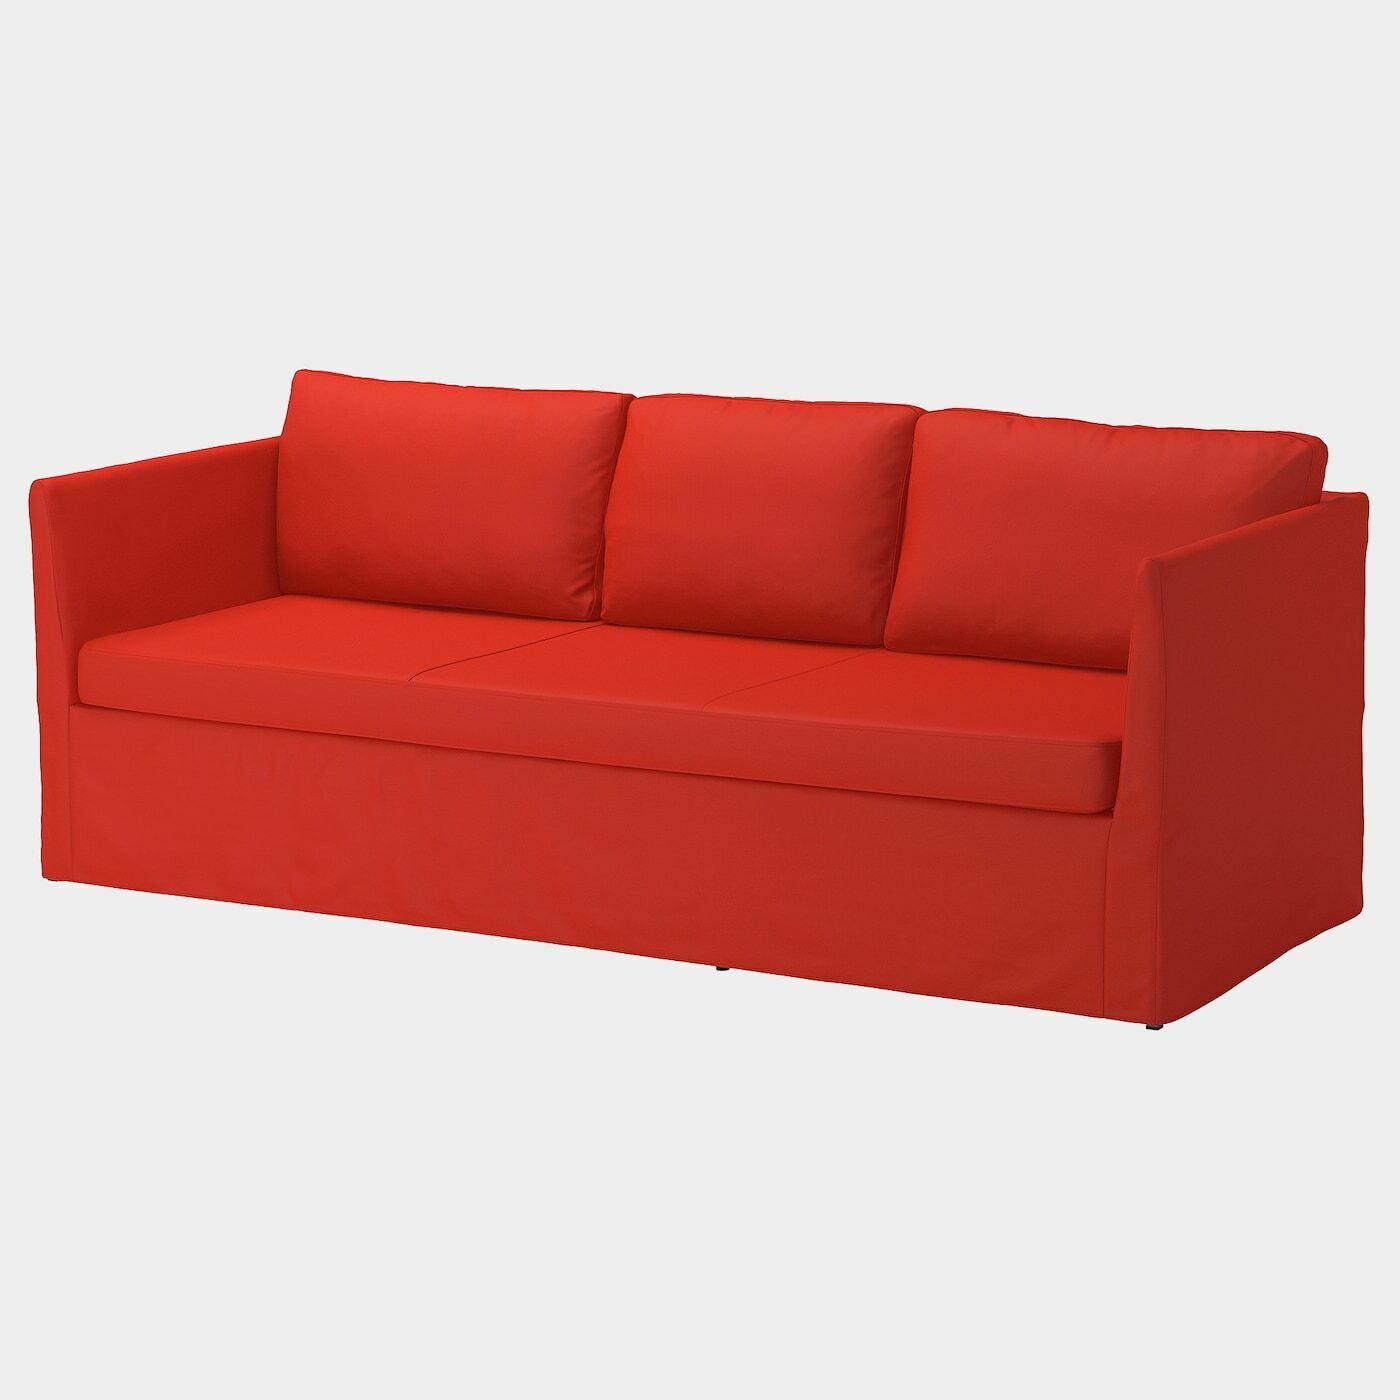 BRÅTHULT Bezug 3er-Sofa  - extra Bezüge - Möbel Ideen für dein Zuhause von Home Trends. Möbel Trends von Social Media Influencer für dein Skandi Zuhause.